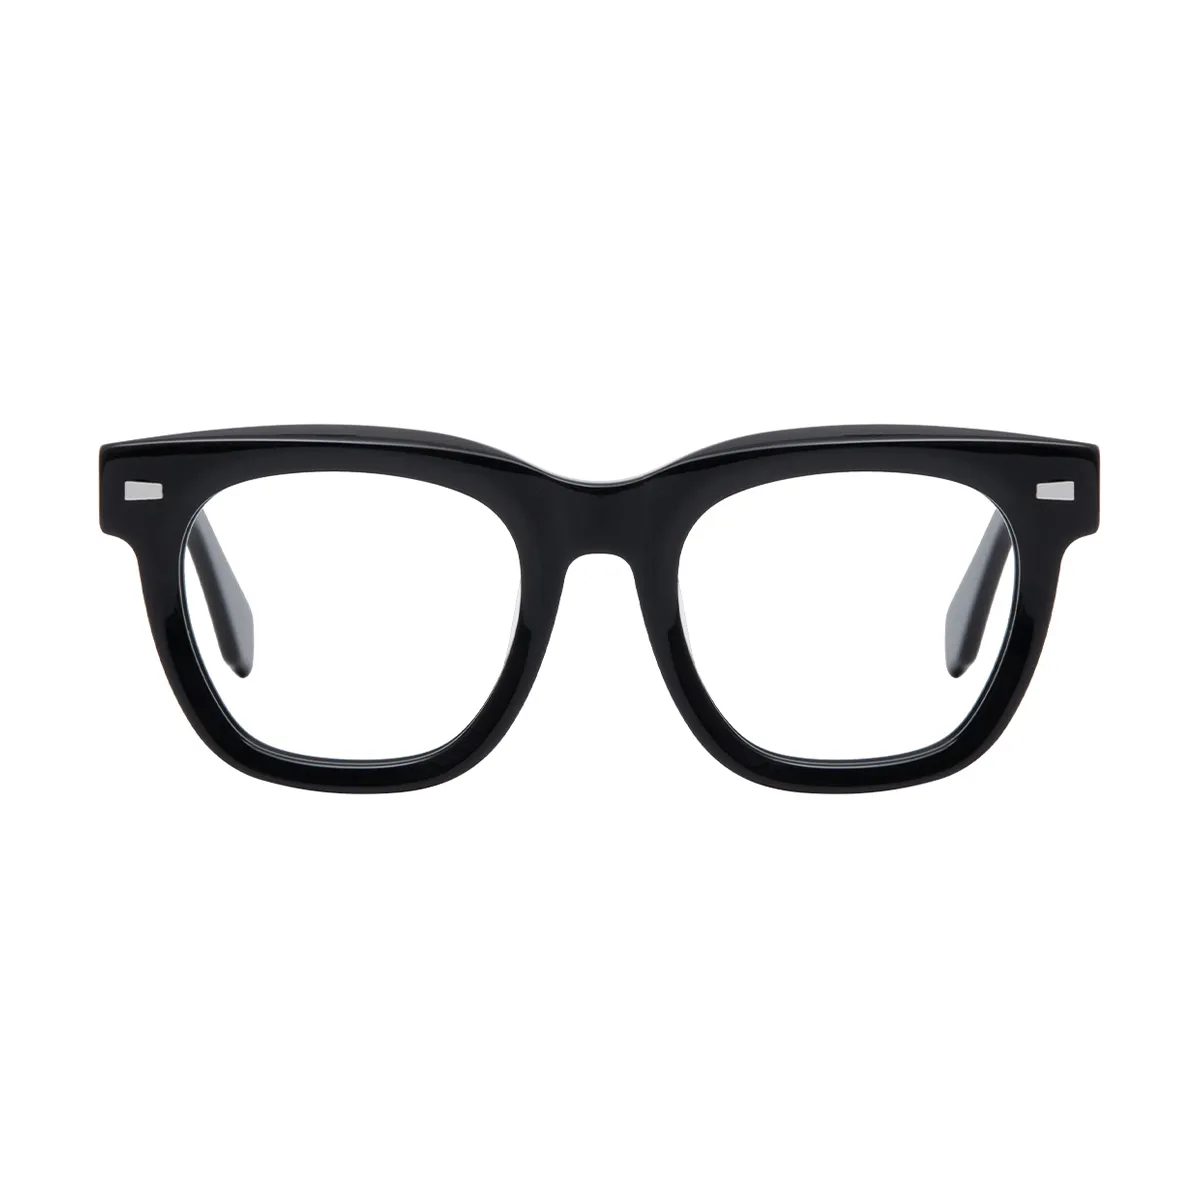 Morty - Square Black Glasses for Men & Women